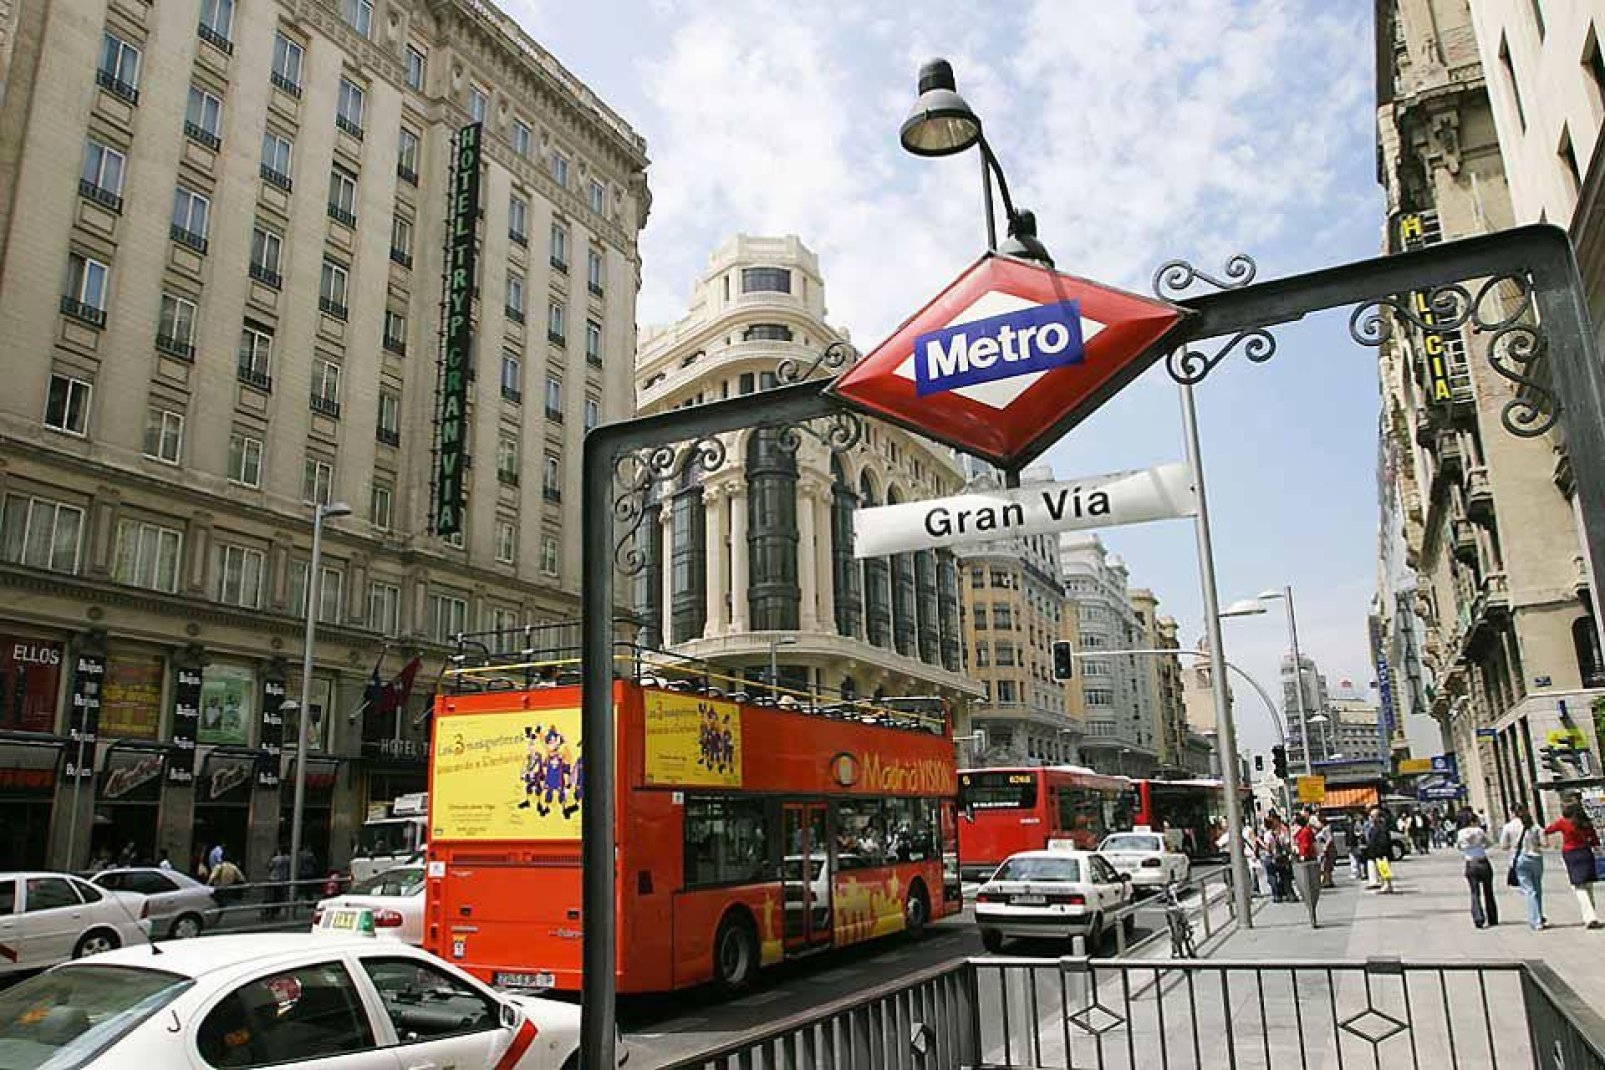 Die Avenida Gran Via ist die Hauptverkehrsader von Madrid. Hier befinden sich unzählige Hotels, Kinos, Banken und Kaufhäuser.